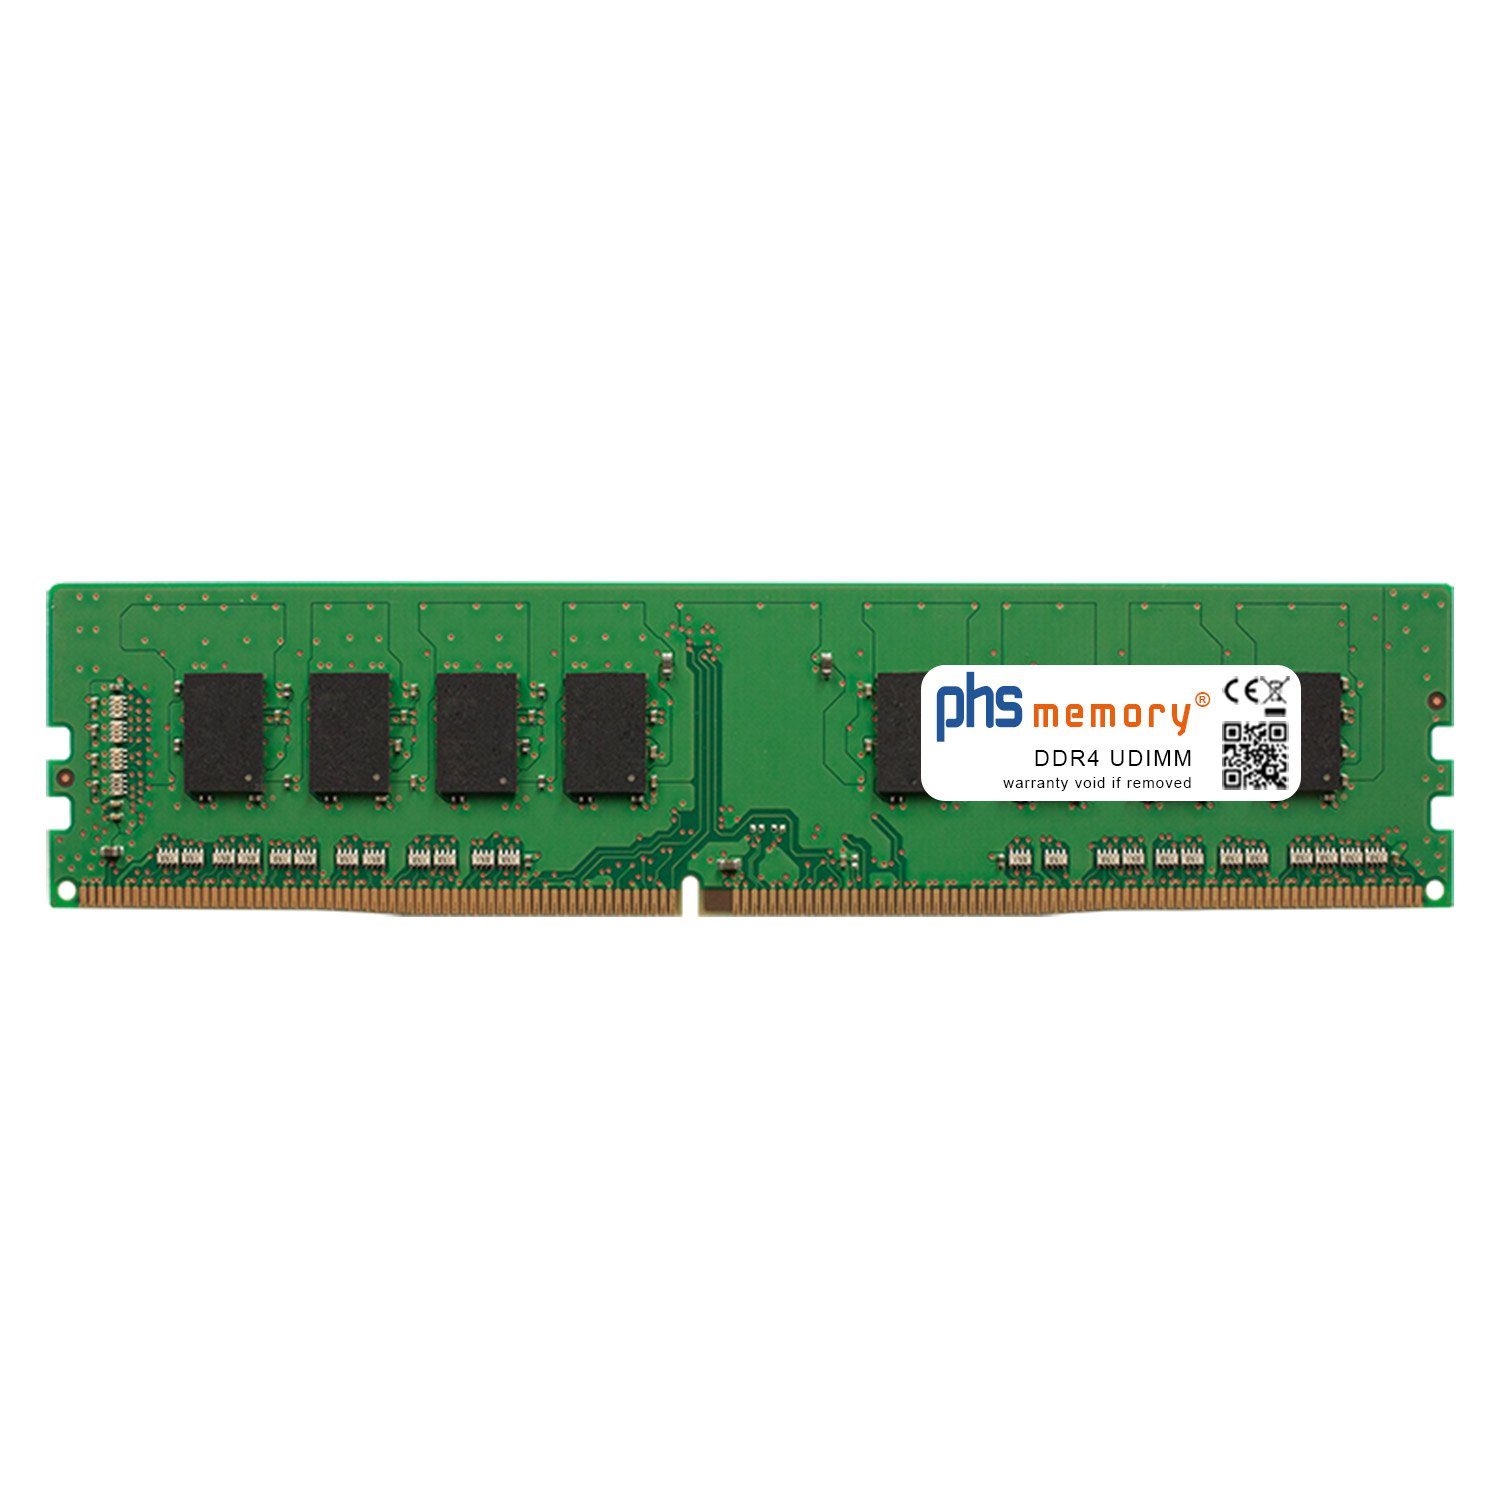 PHS-memory RAM für Captiva Highend Gaming R65-569 Arbeitsspeicher